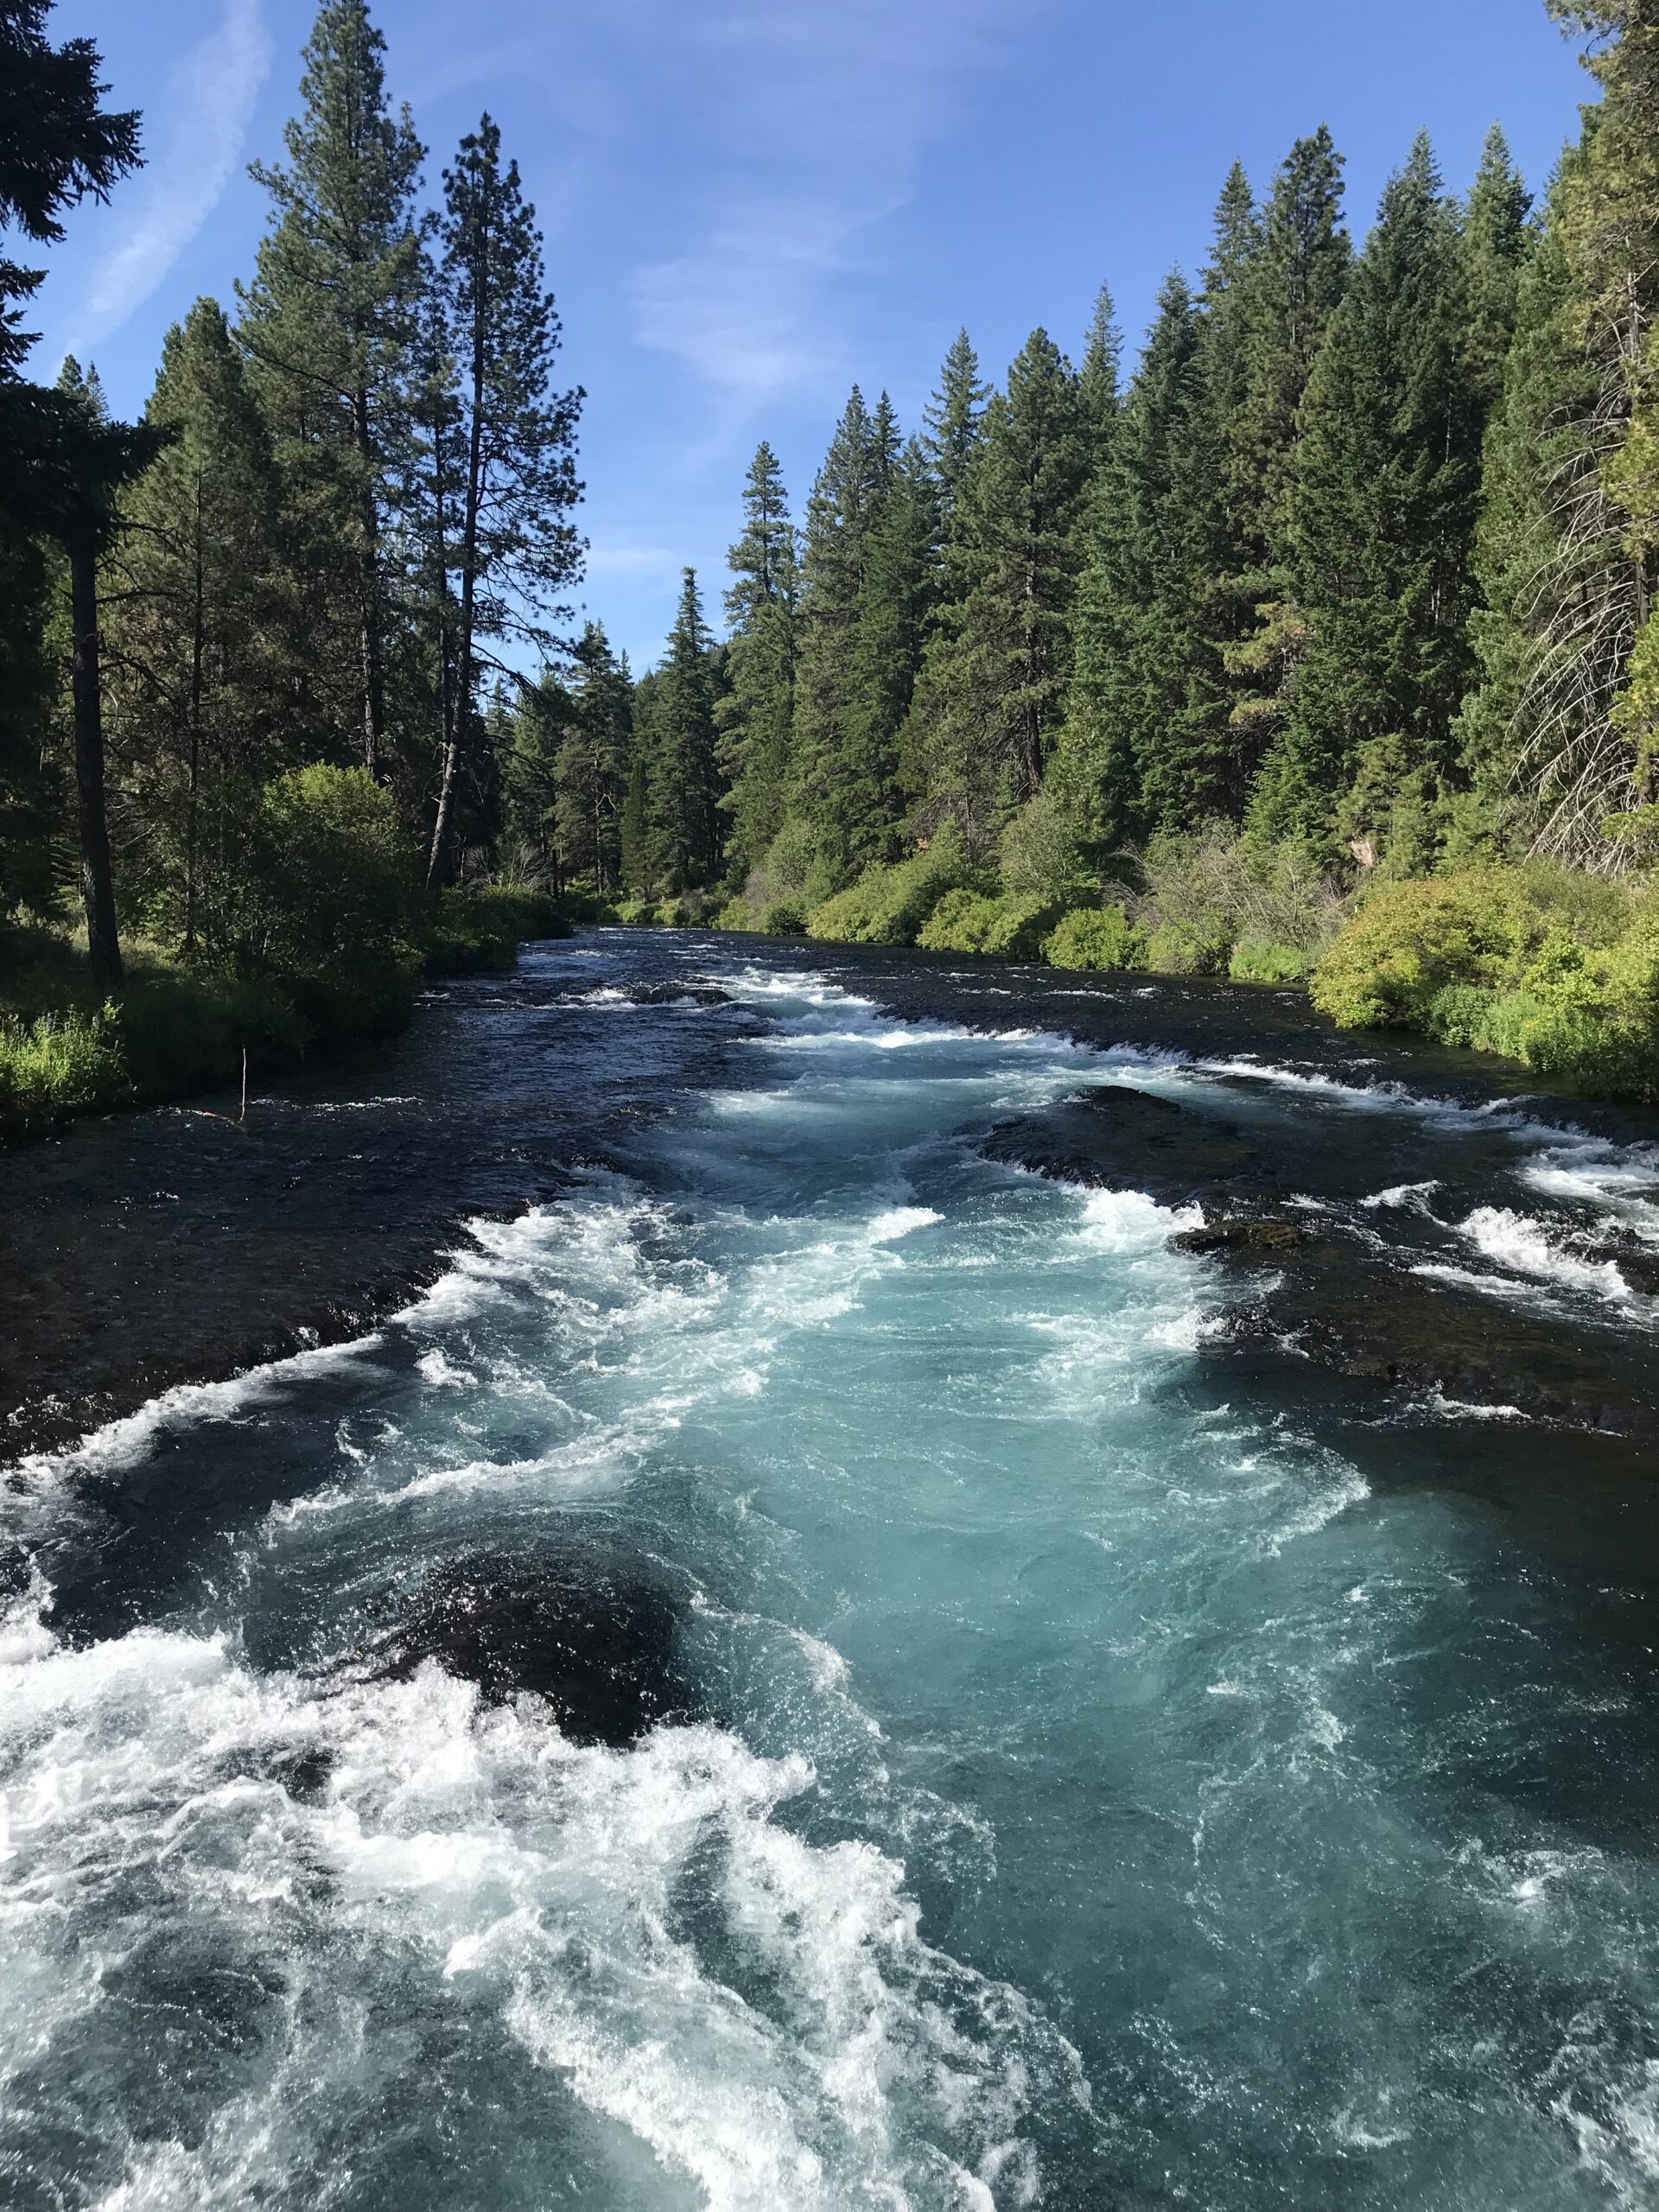 Metolius River Wizard Falls in Oregon by Daniel White